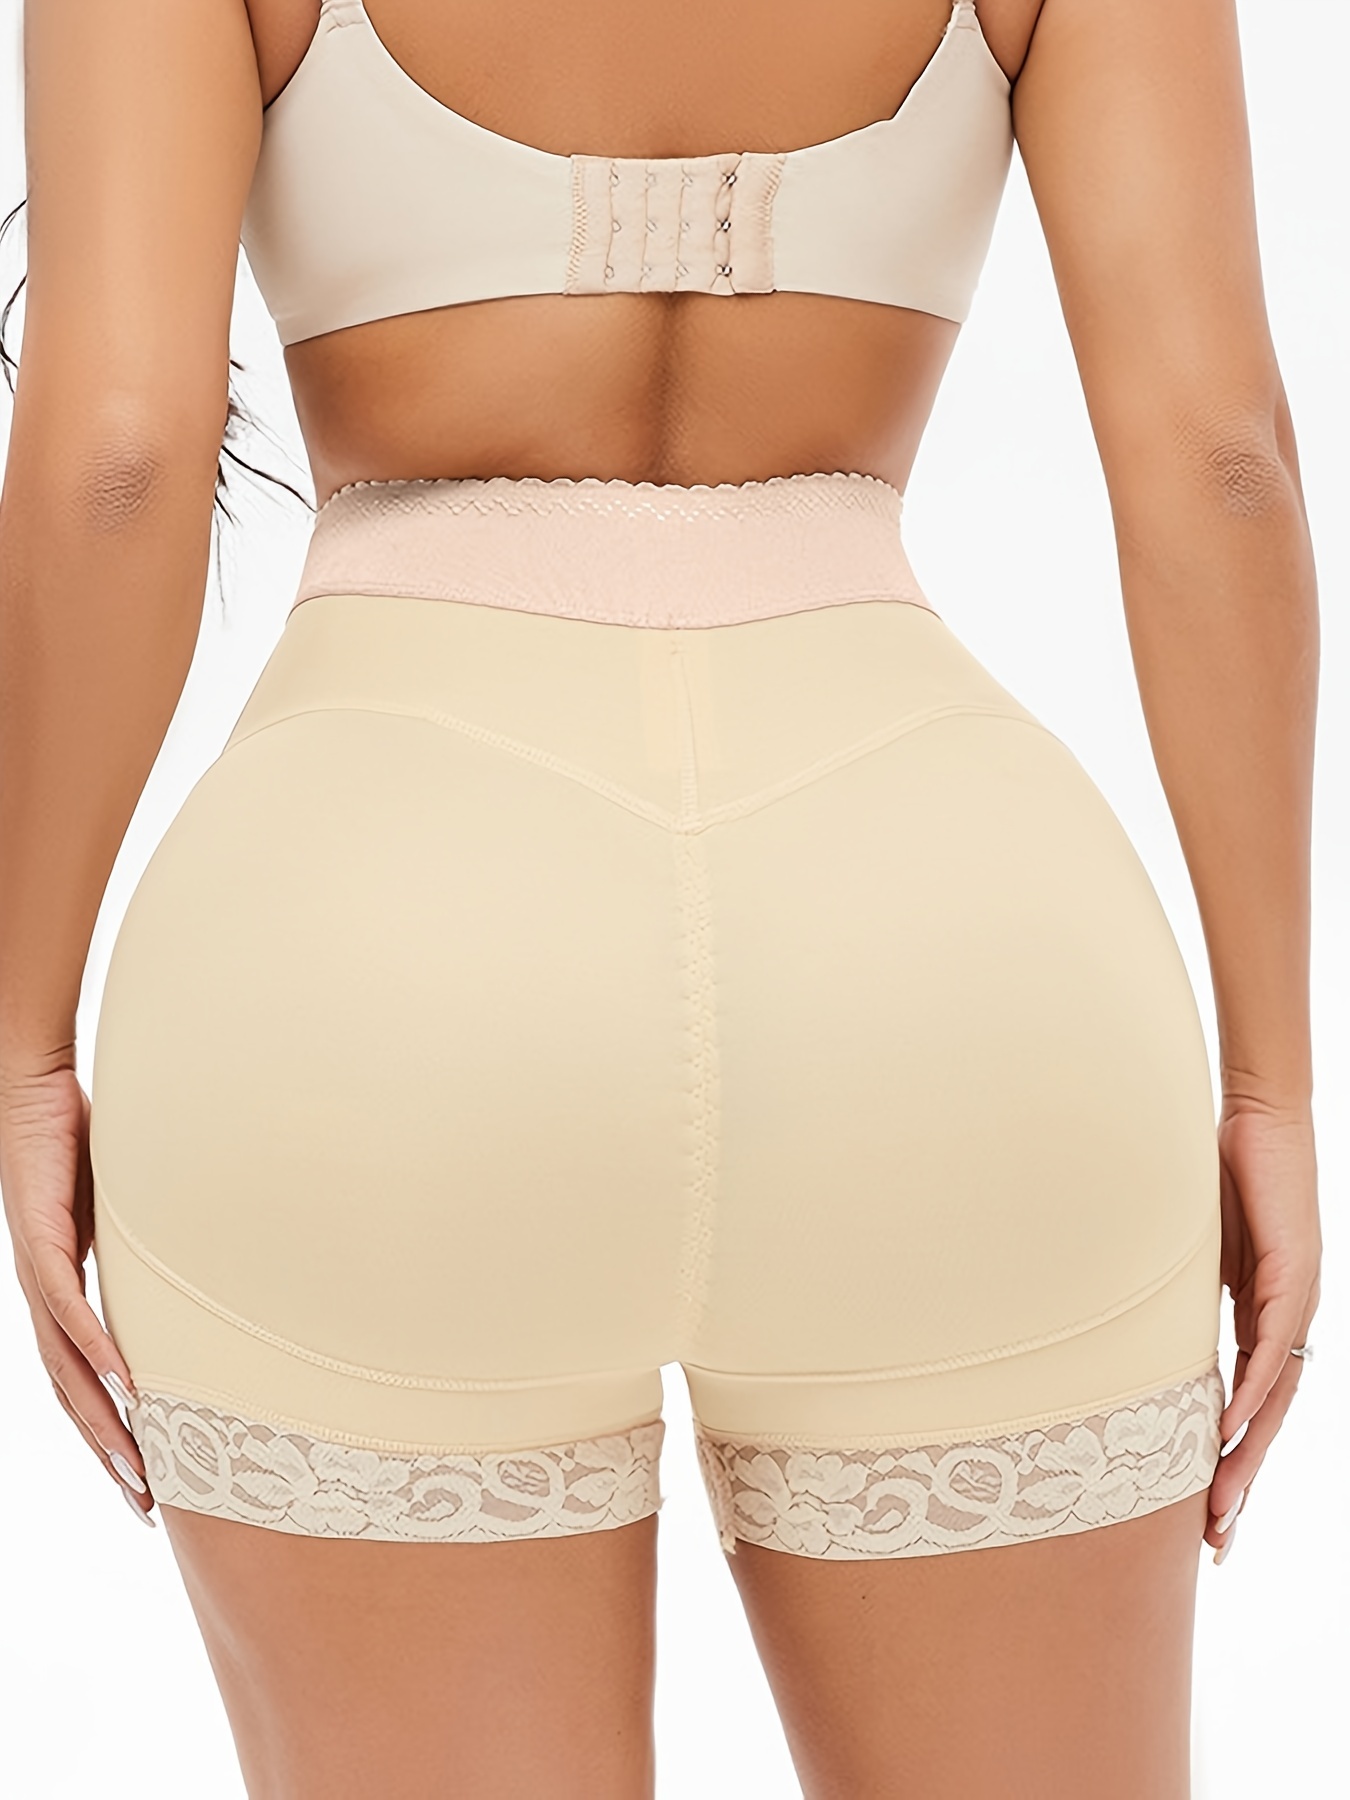 NWT Women's SlimShaper Underwear Size XXL Tush Up Booty Lift Shortie  Shapewear